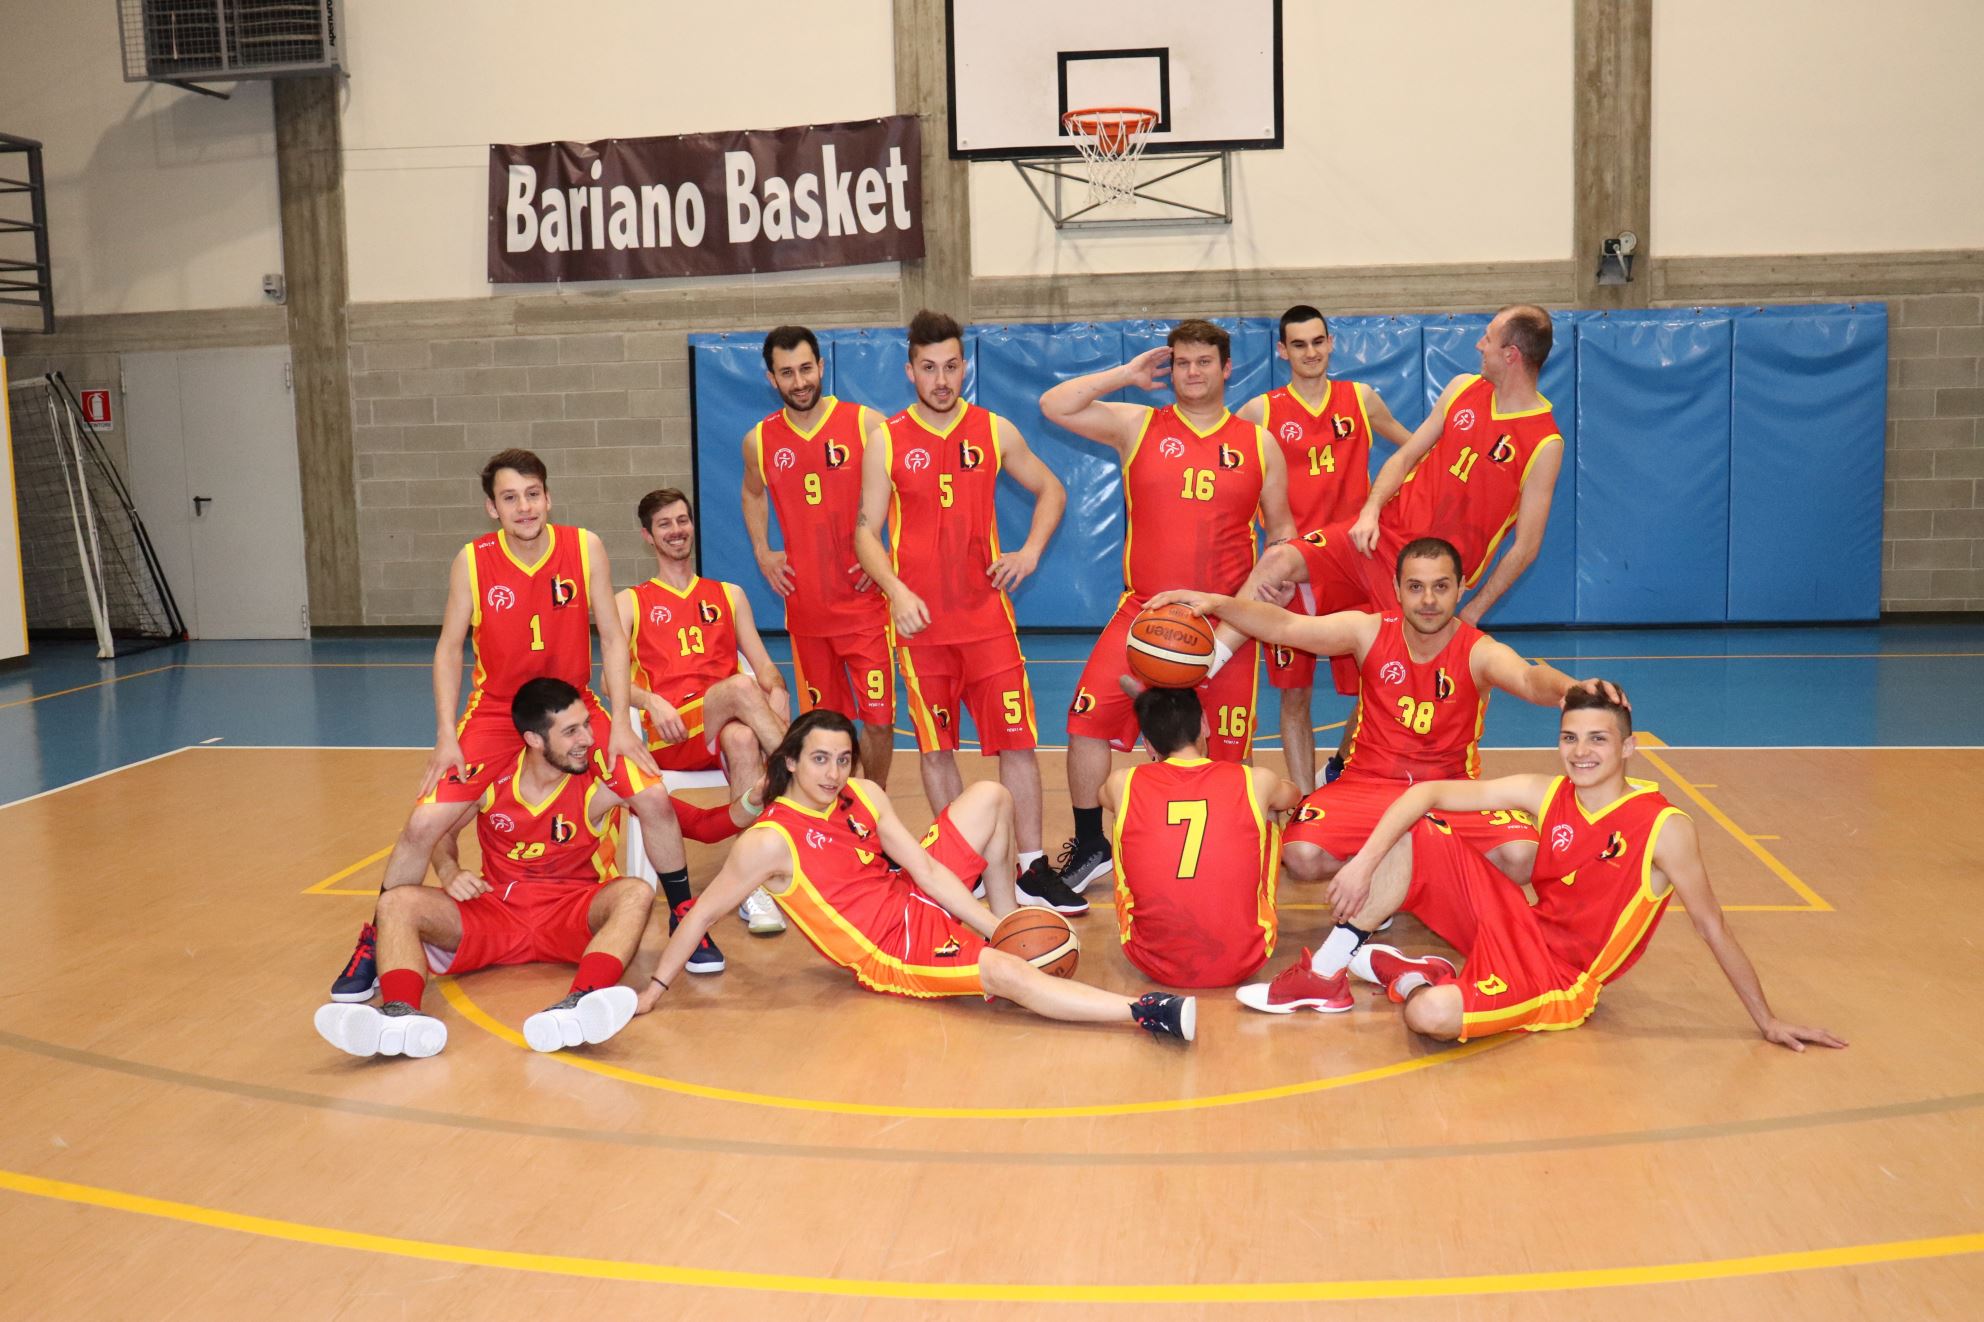 Bariano Basket (3)